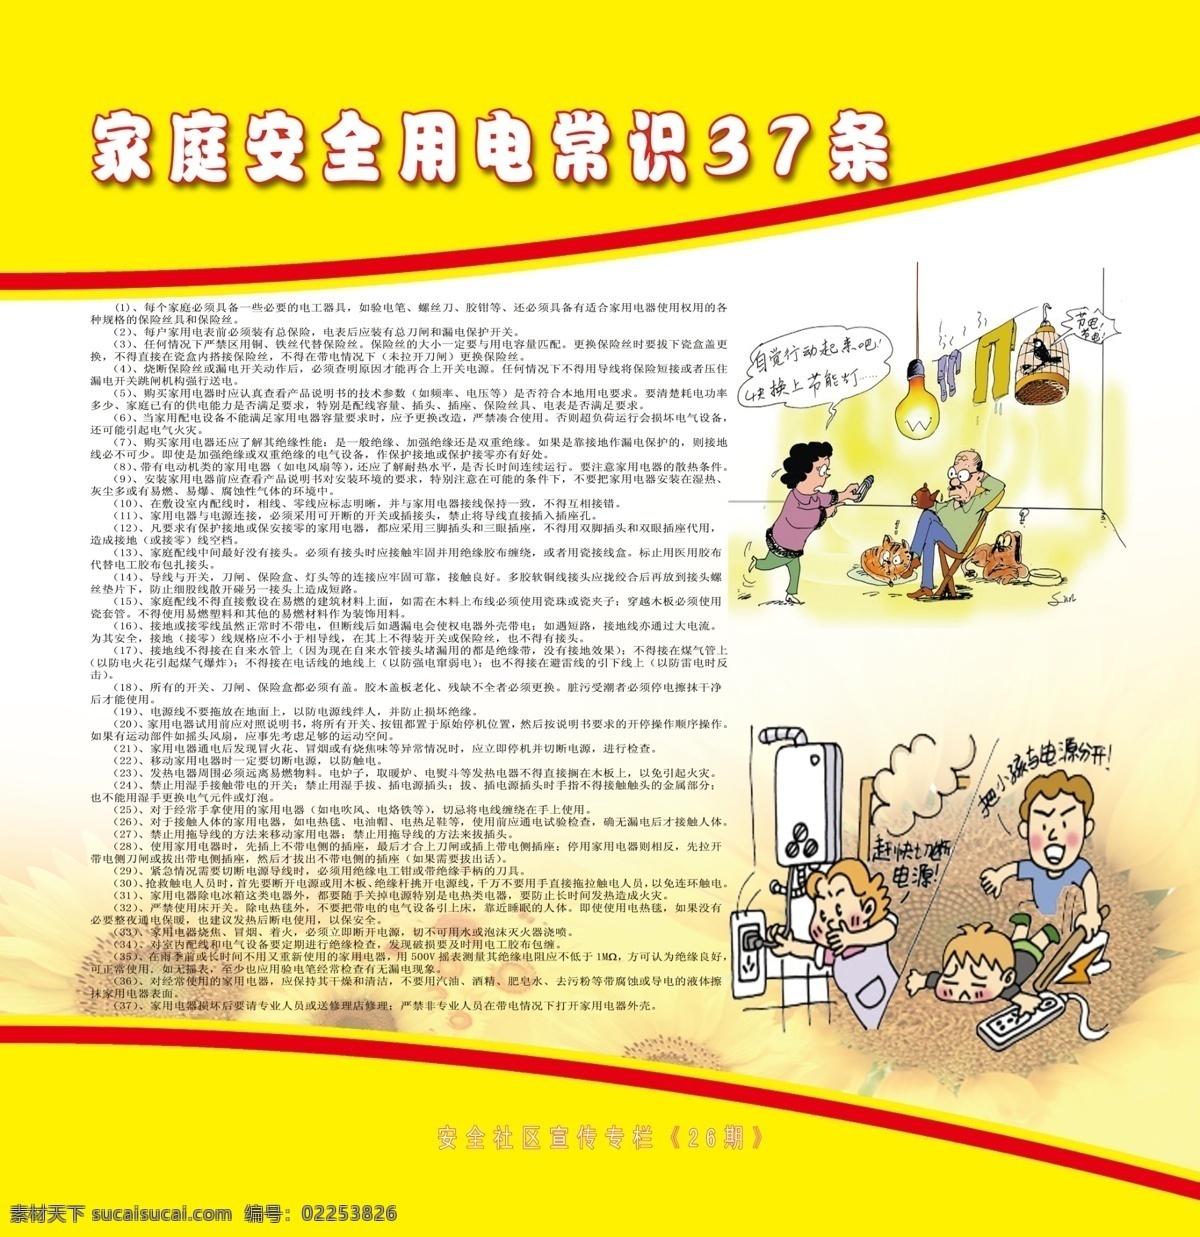 家庭 安全 用电 常识 漫画 黄色 向日葵底图 版式 展板模板 广告设计模板 源文件